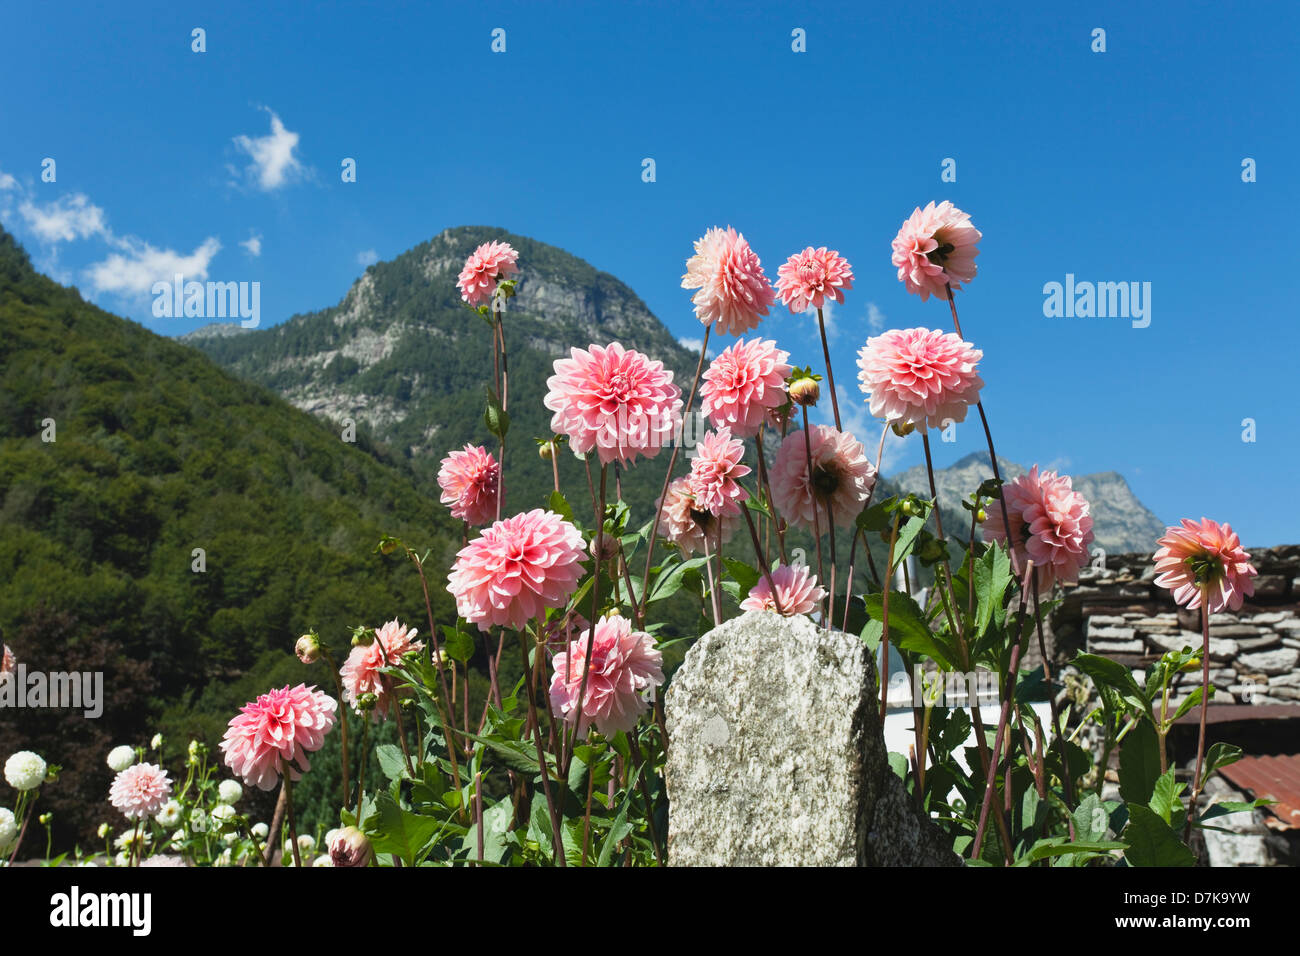 Switzerland, Brione, View of dahlia in cottage garden Stock Photo